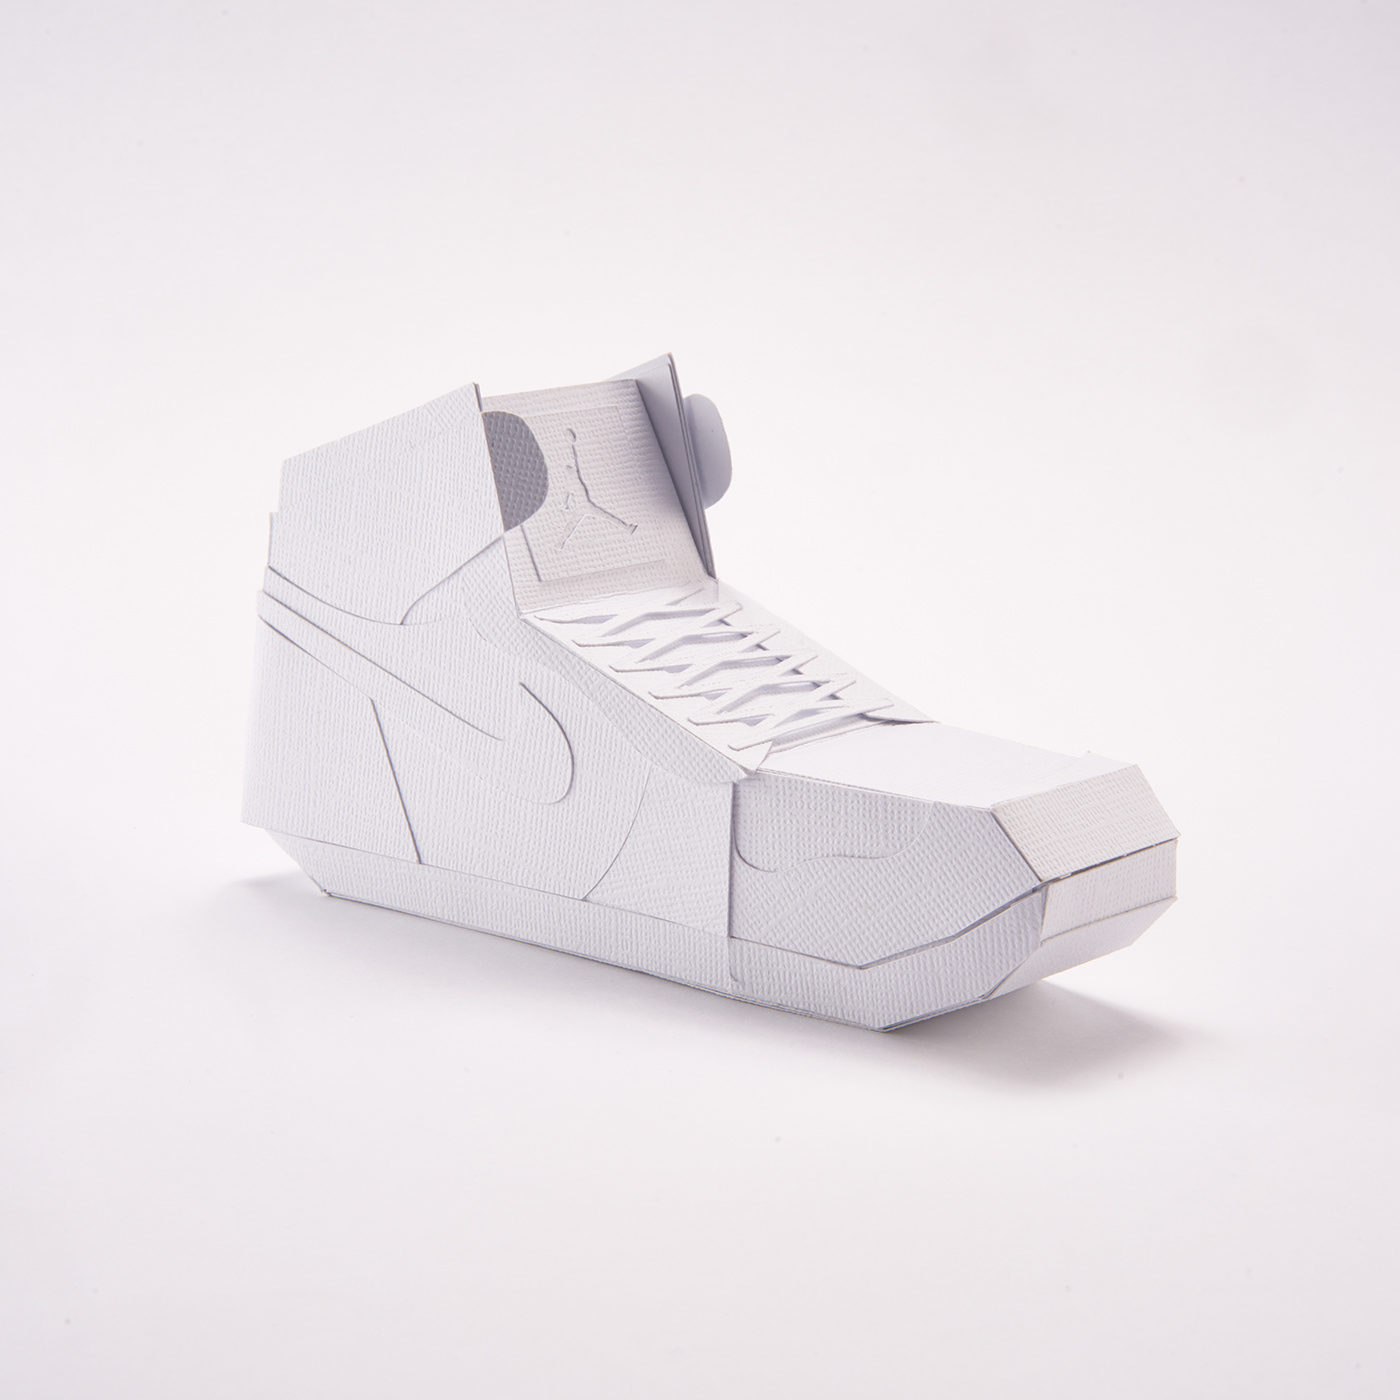 art Nike sneakers Air jordan one aj1 paper paper art paper sculpture paper shoes paper sneaker